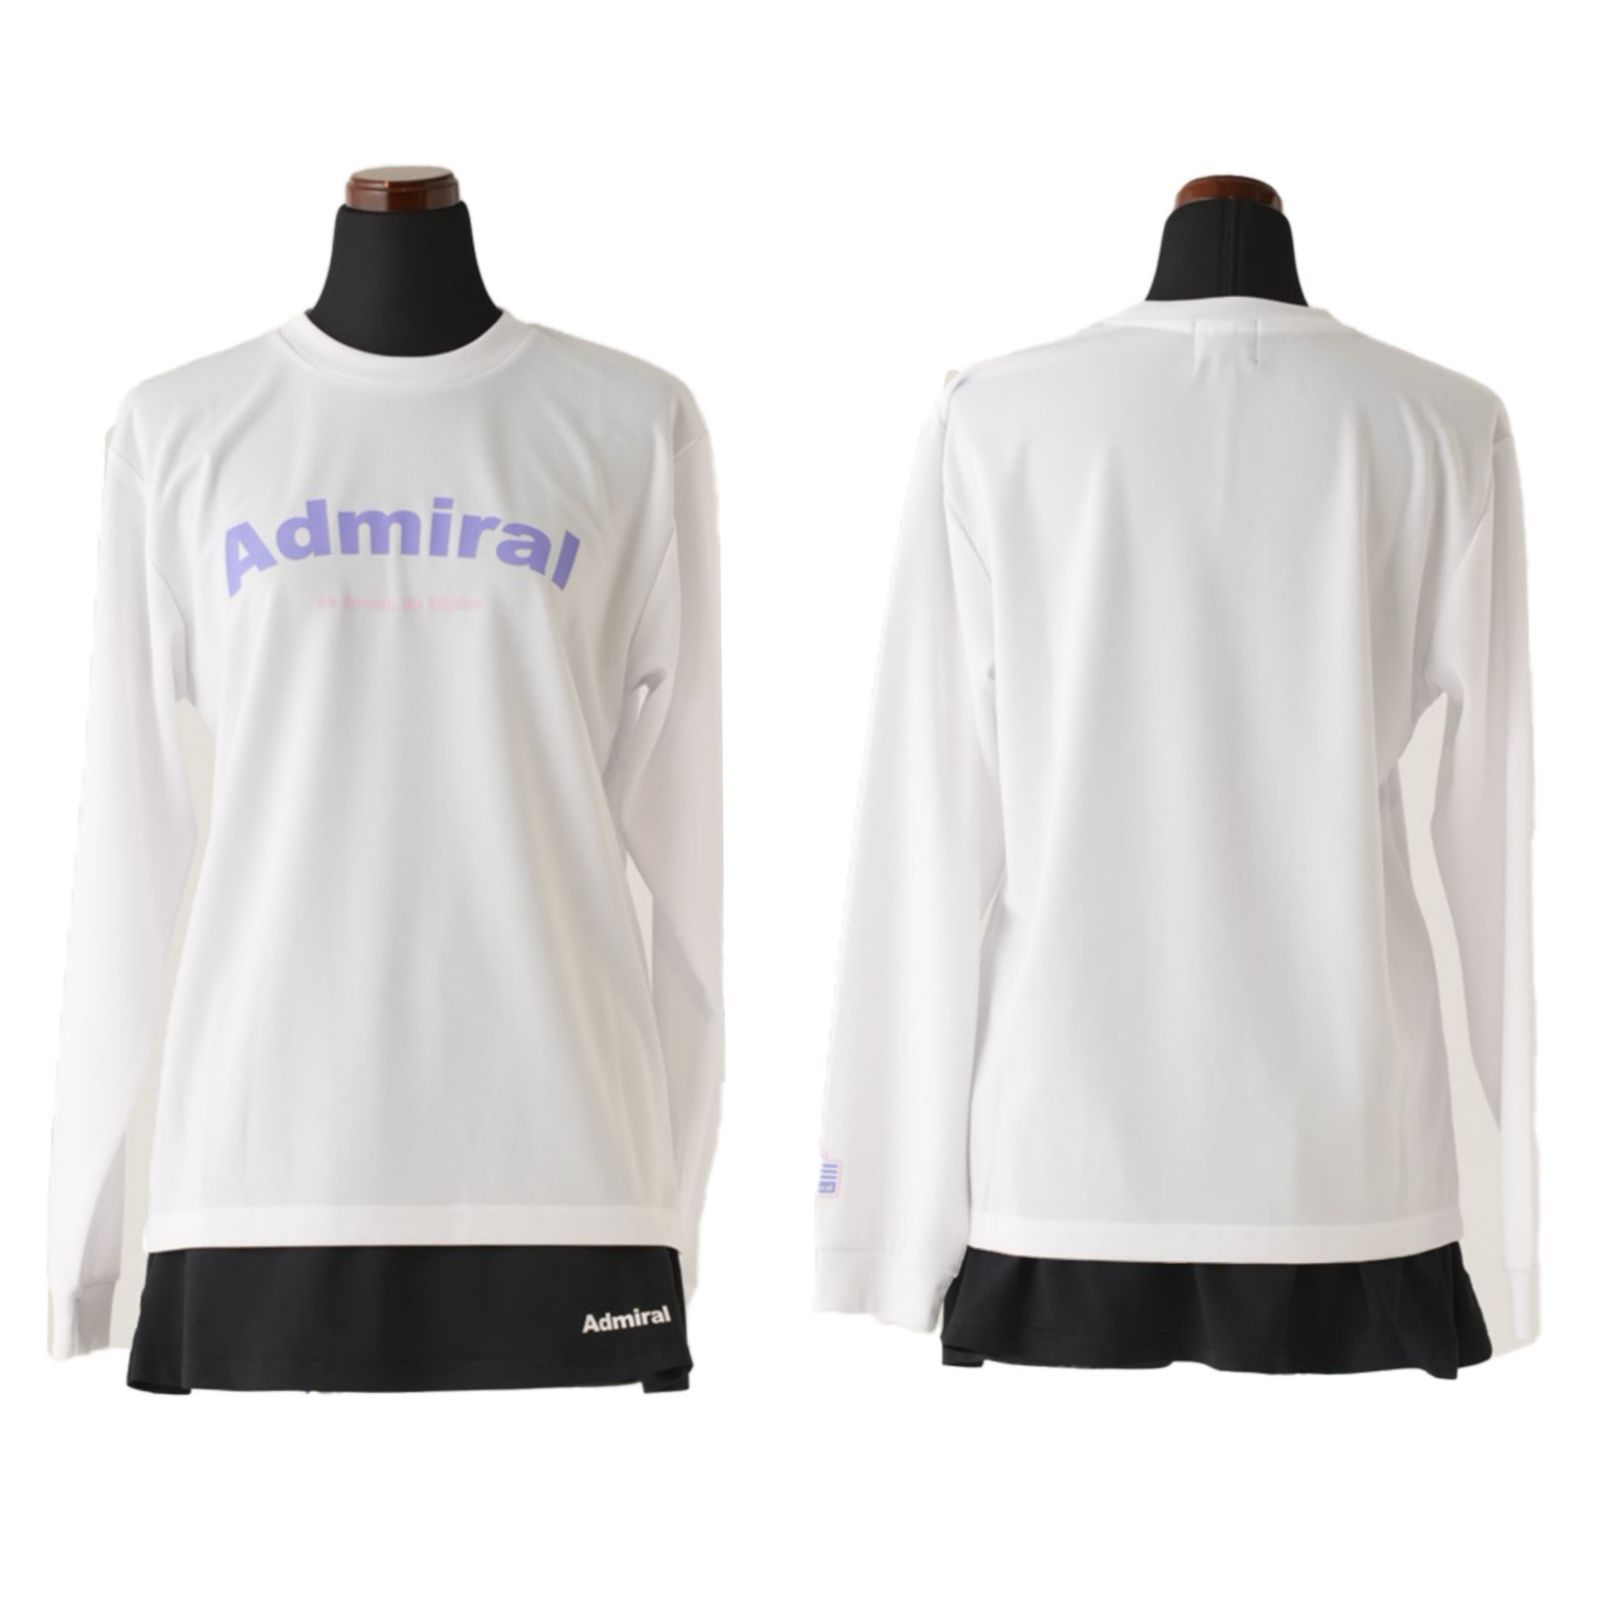 Admiral アドミラル テニス ウェア シャツ 半袖 長袖 2点セット 新品美 